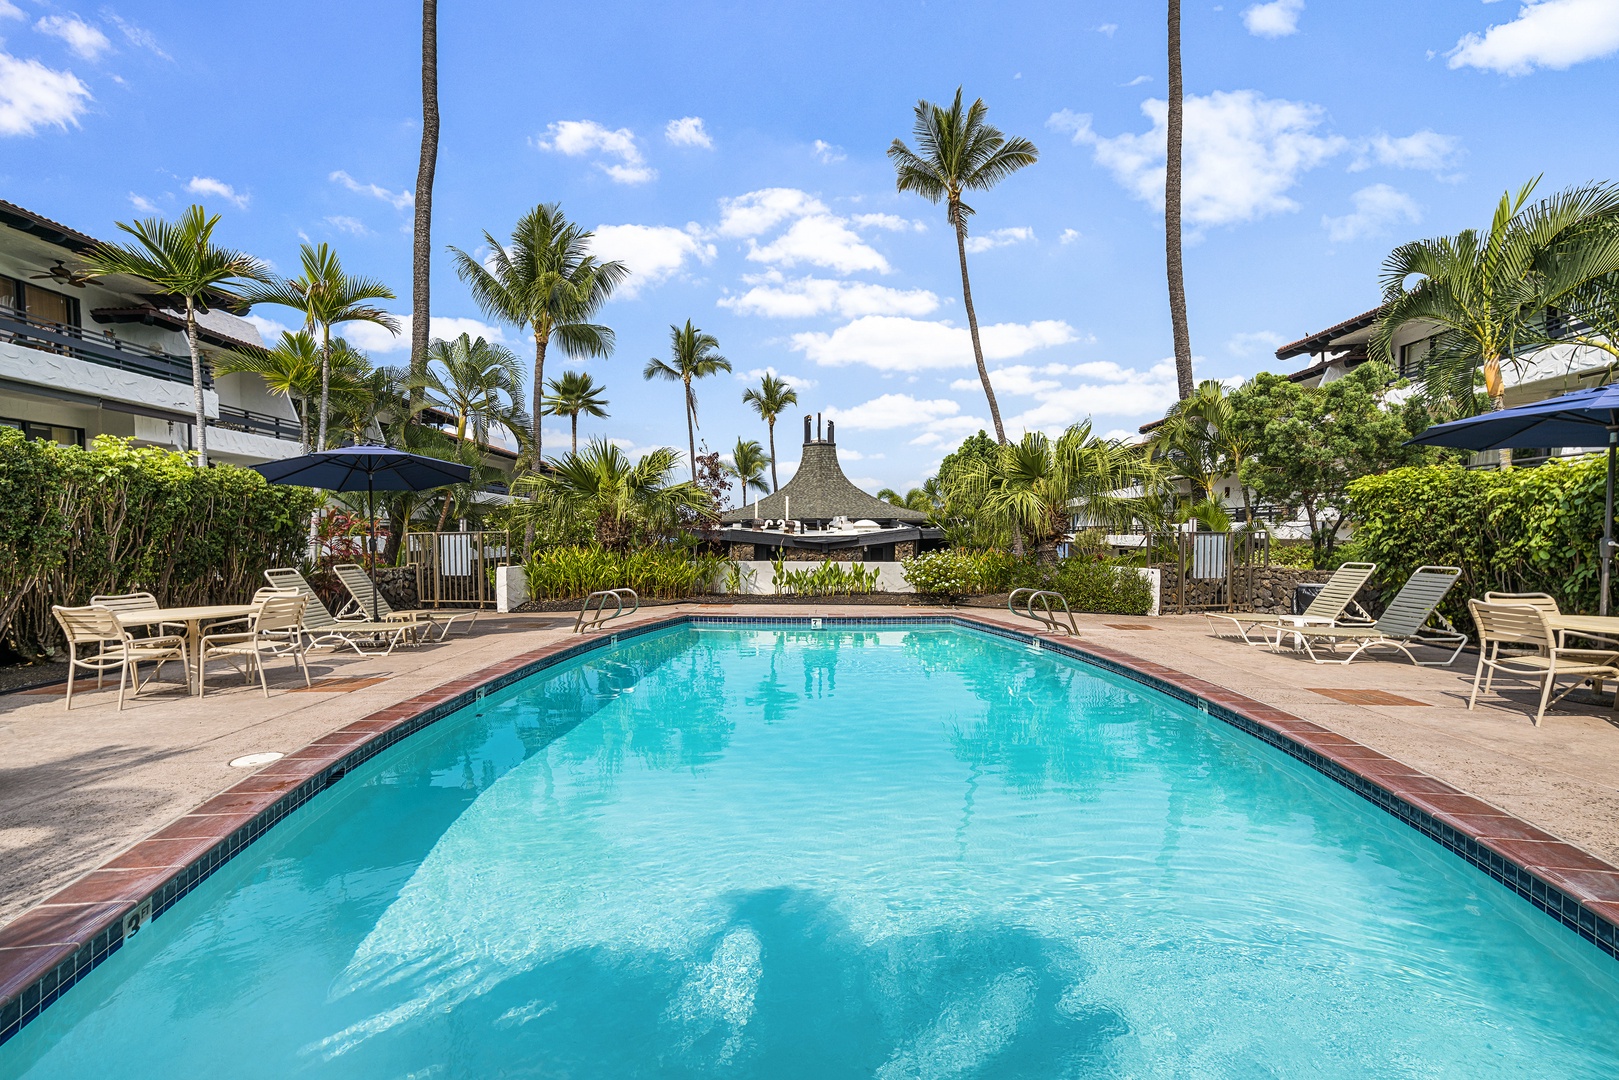 Kailua Kona Vacation Rentals, Casa De Emdeko 222 - One of two pools at Casa De Emdeko (freshwater)